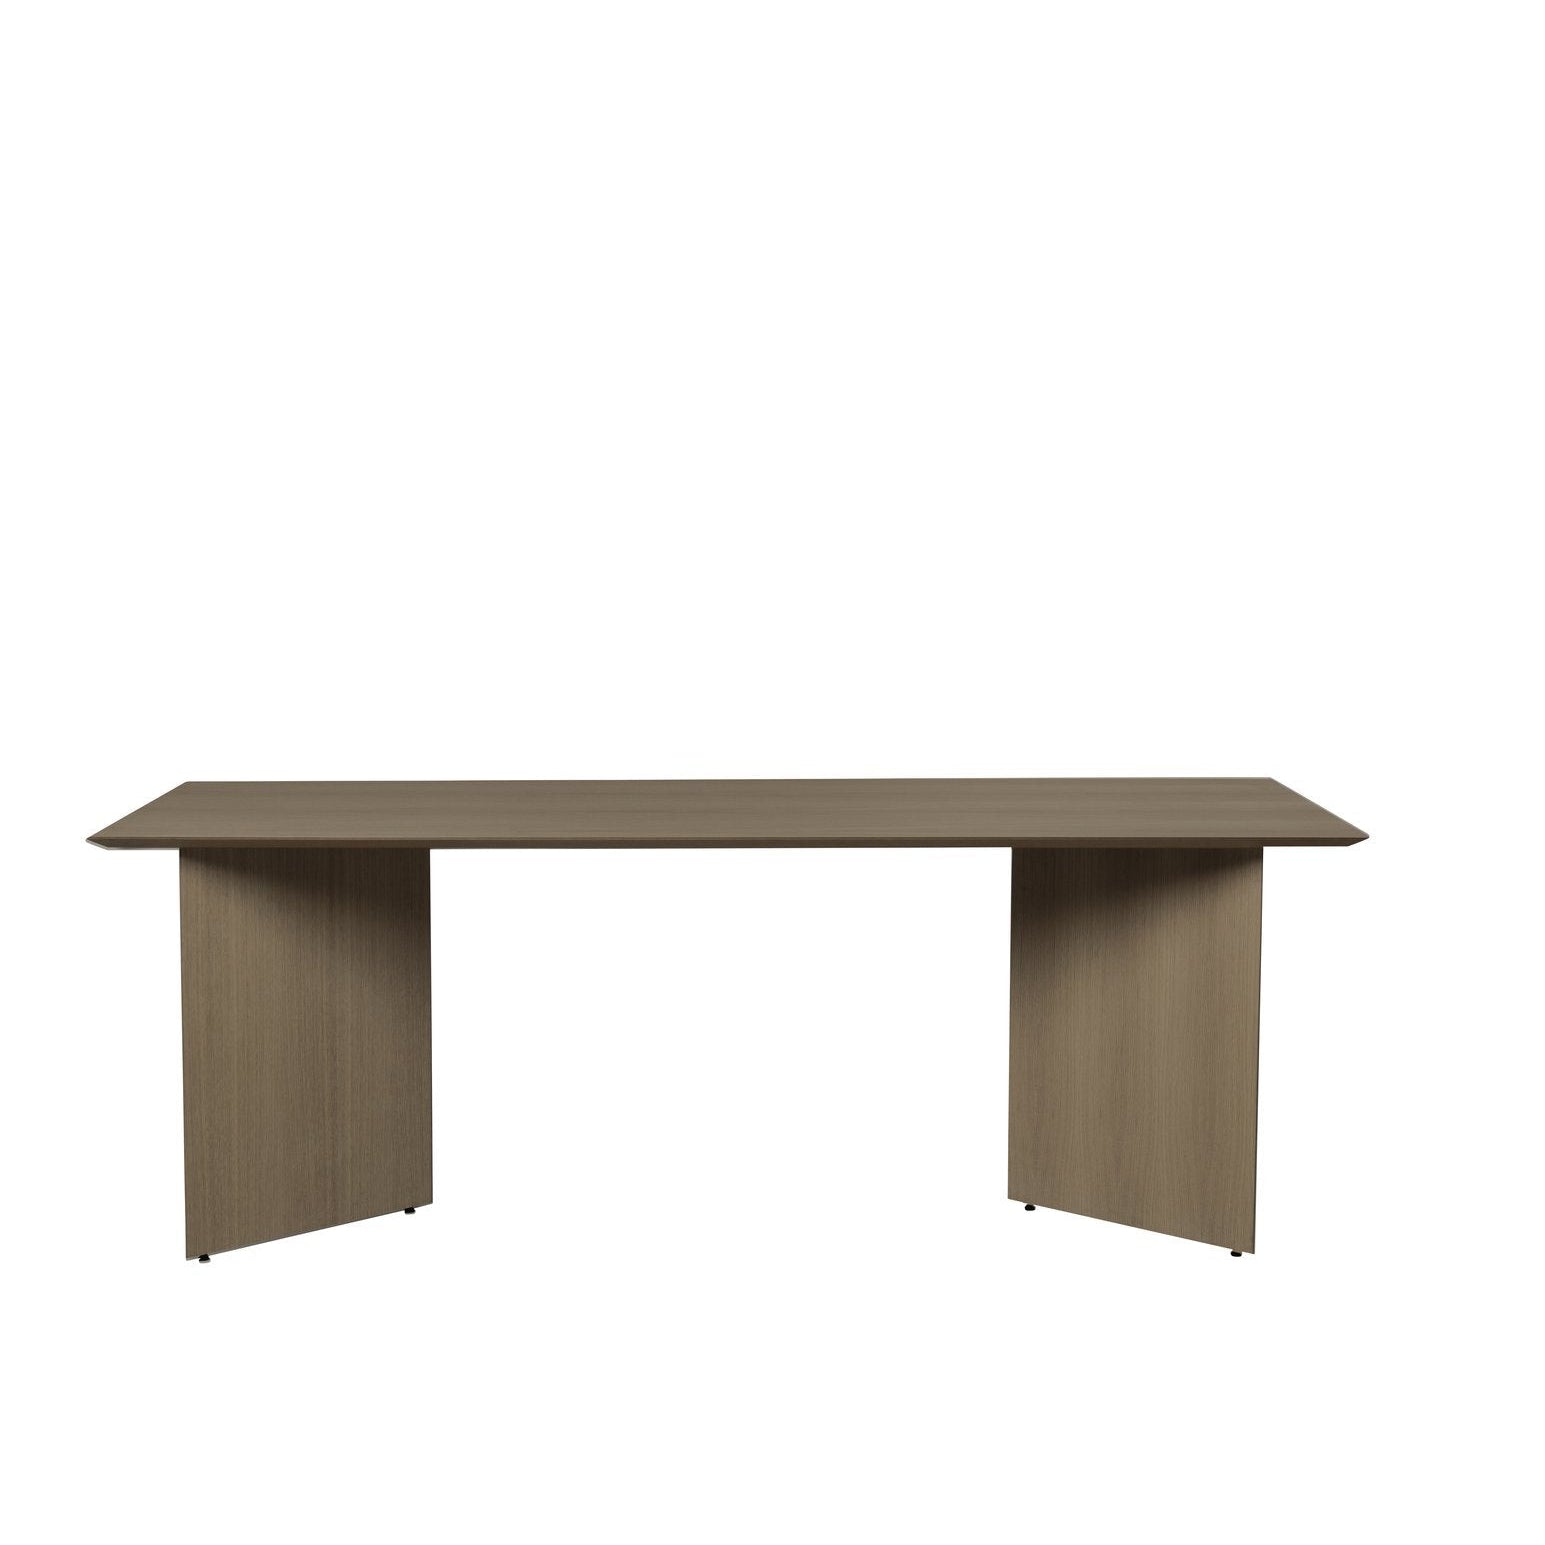 Ferm Living Mingle Table Top Dark Fringer, 210 cm